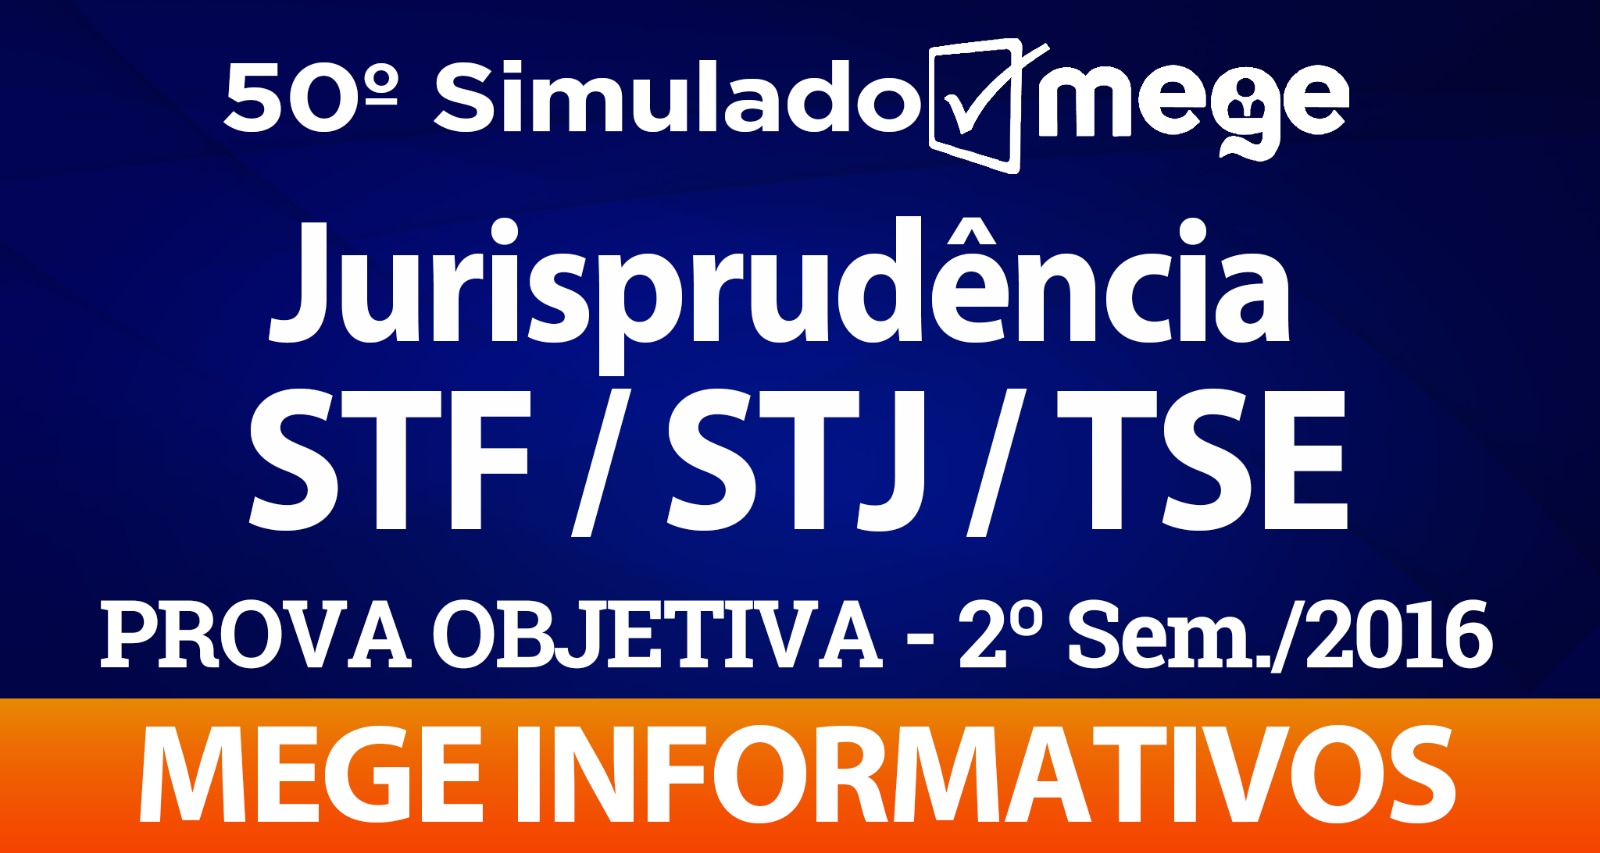 50º Simulado Mege (Jurisprudência, STF/STJ/TSE - 2º Semestre/2016)